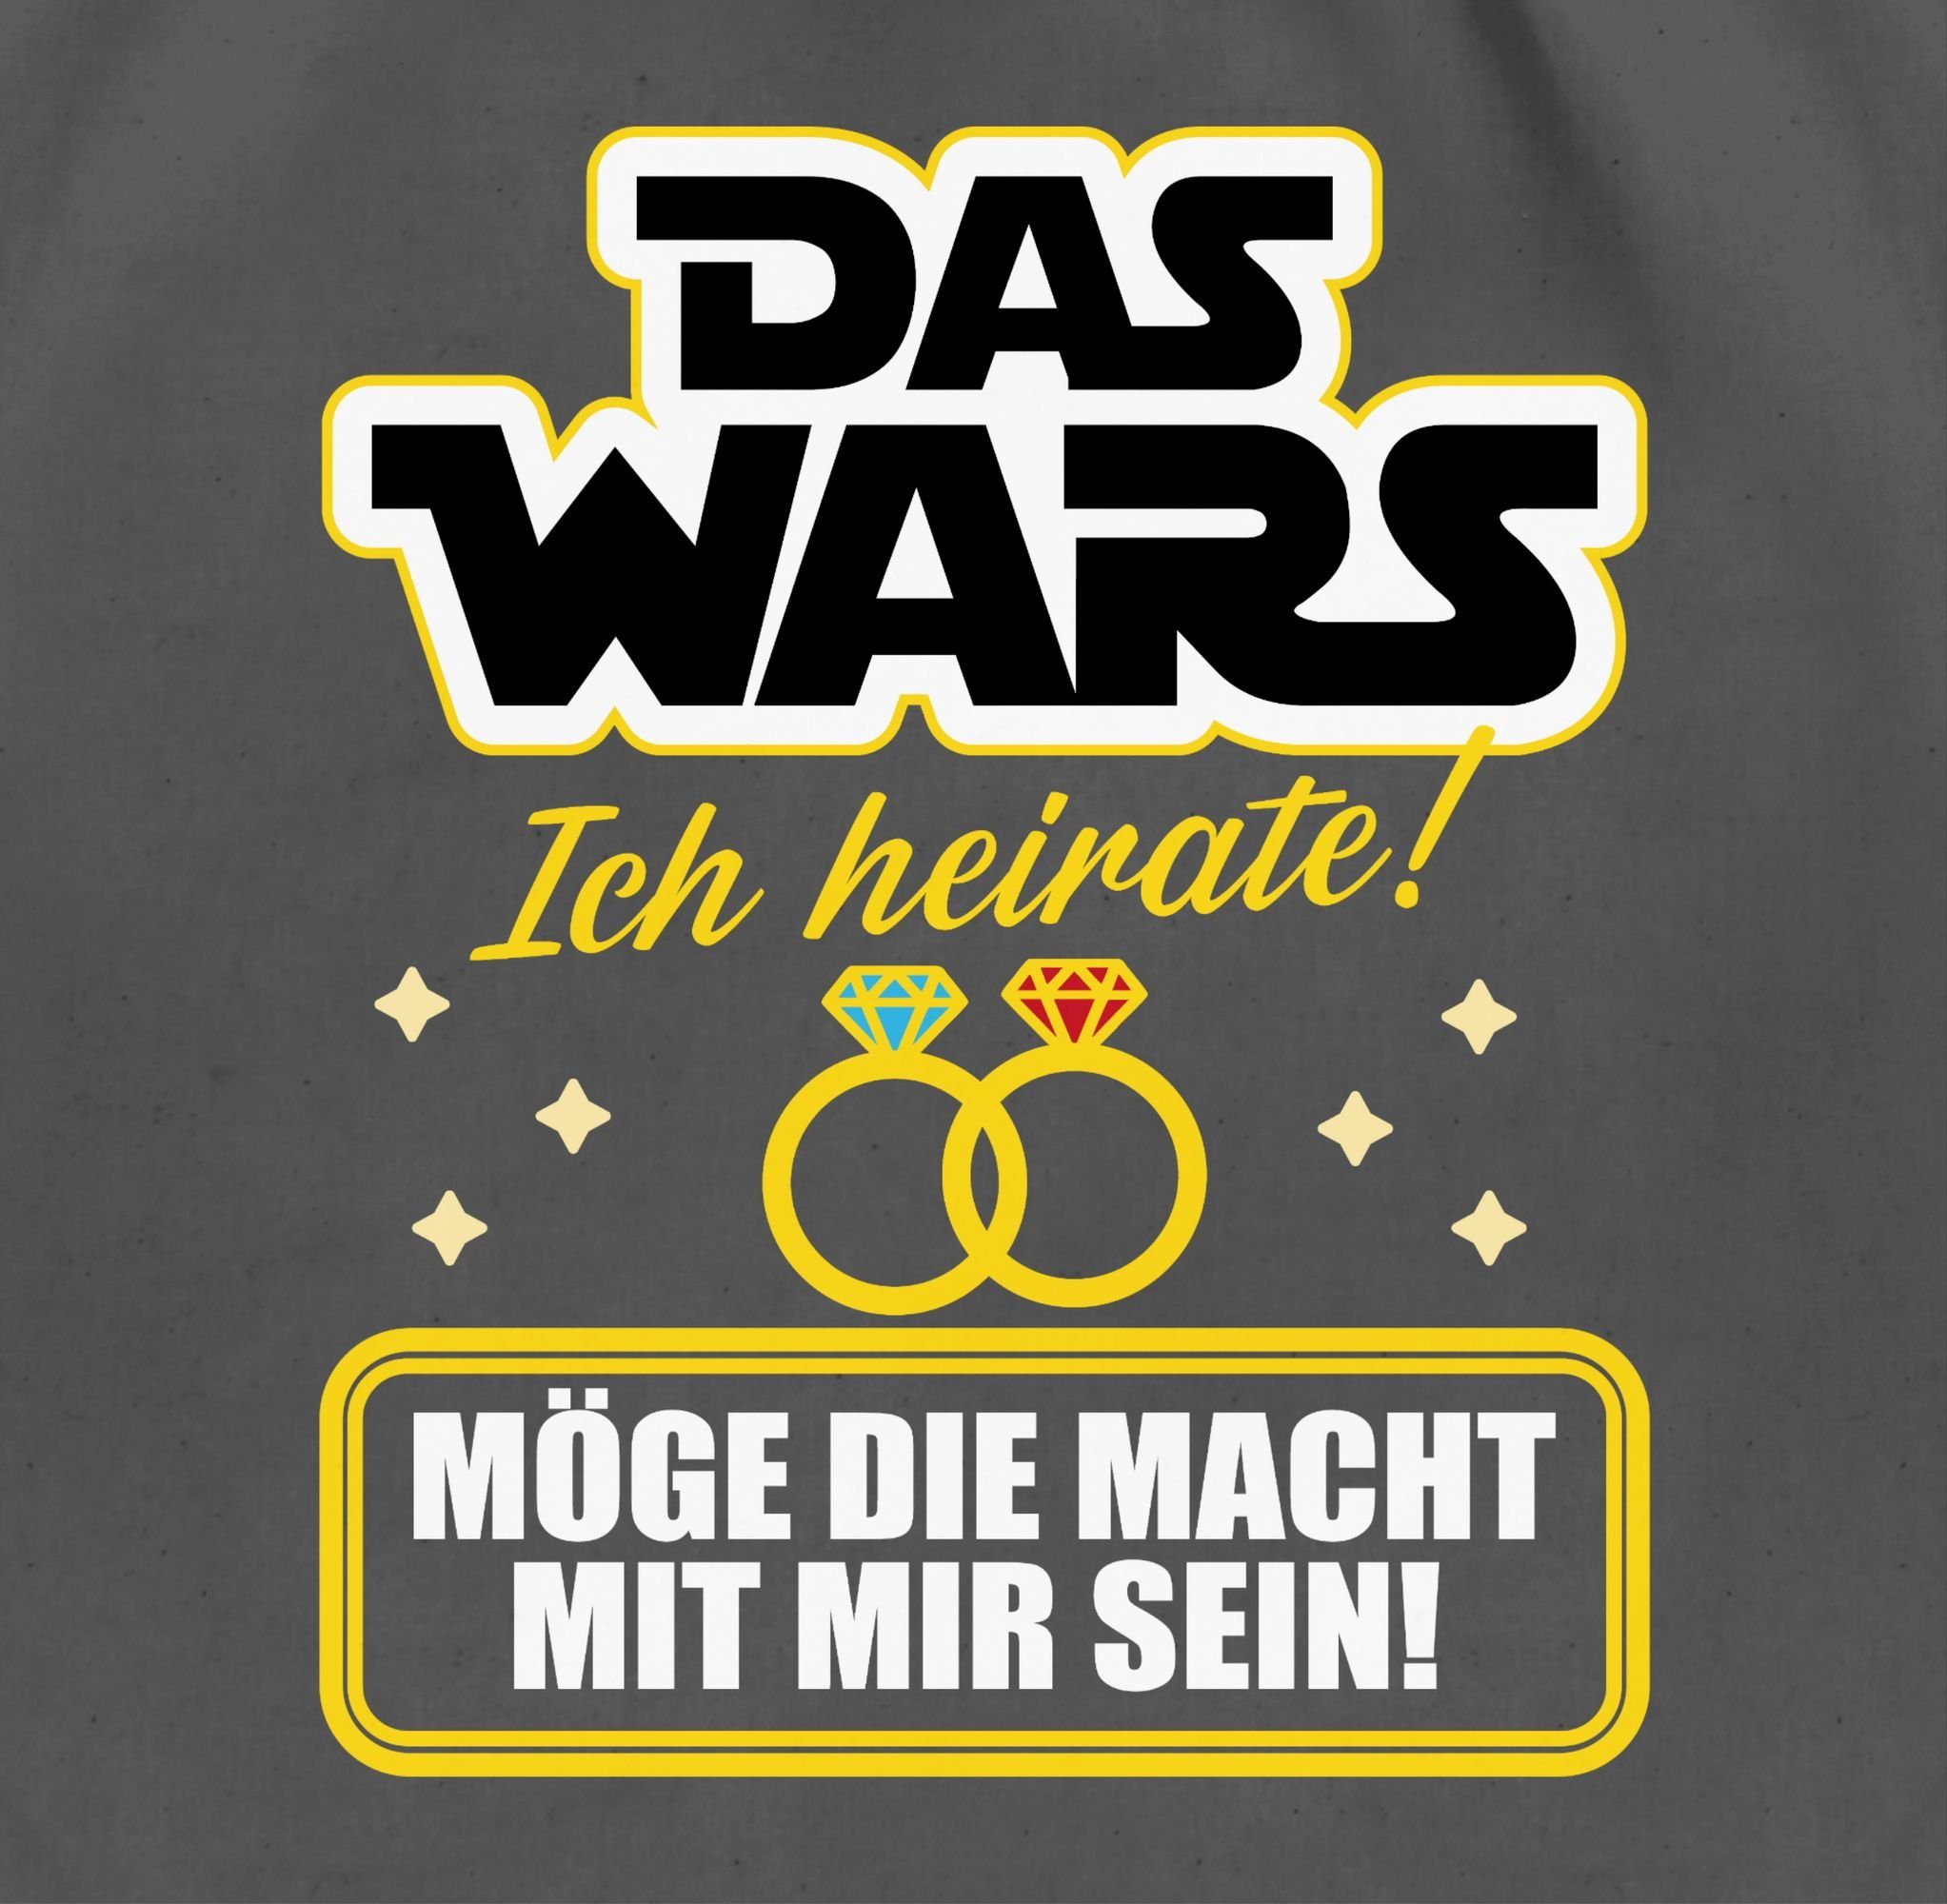 Wars - heirate Das Turnbeutel Ich - Shirtracer Männer JGA gelb/weiß, Dunkelgrau 03